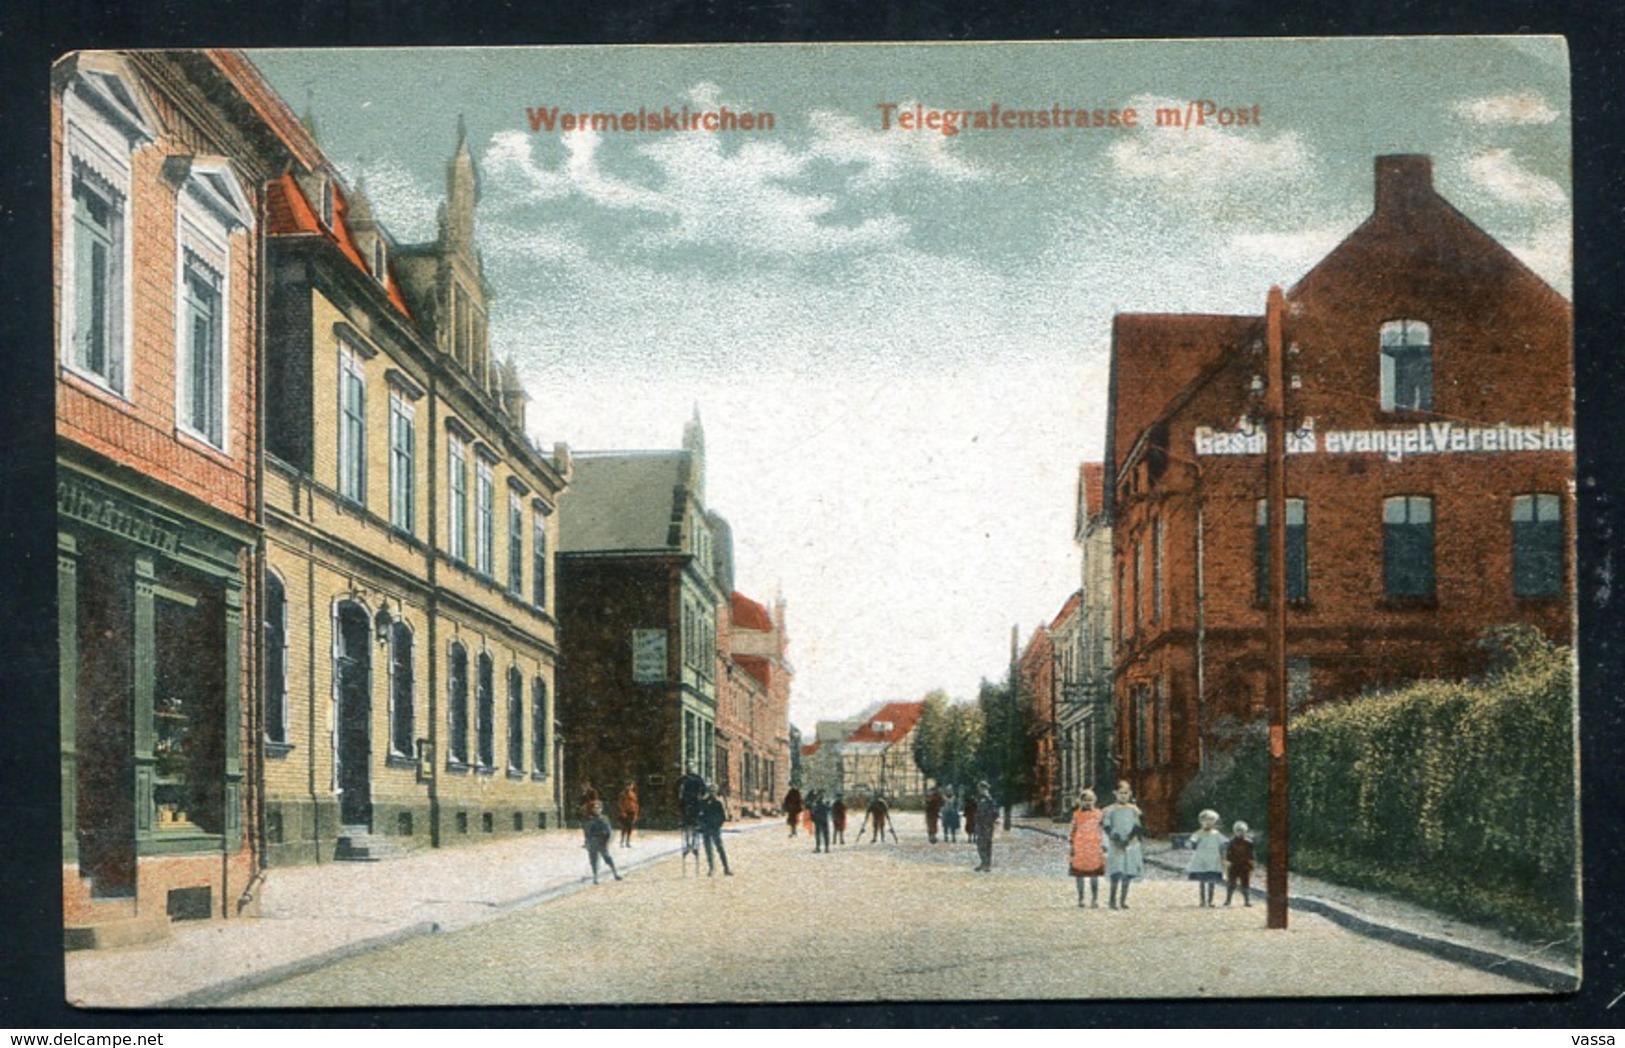 Wermelskirchen - Gasthaus Evangel. Vereinshaus Und Post Auf Der Telegrafenstrasse - Wermelskirchen